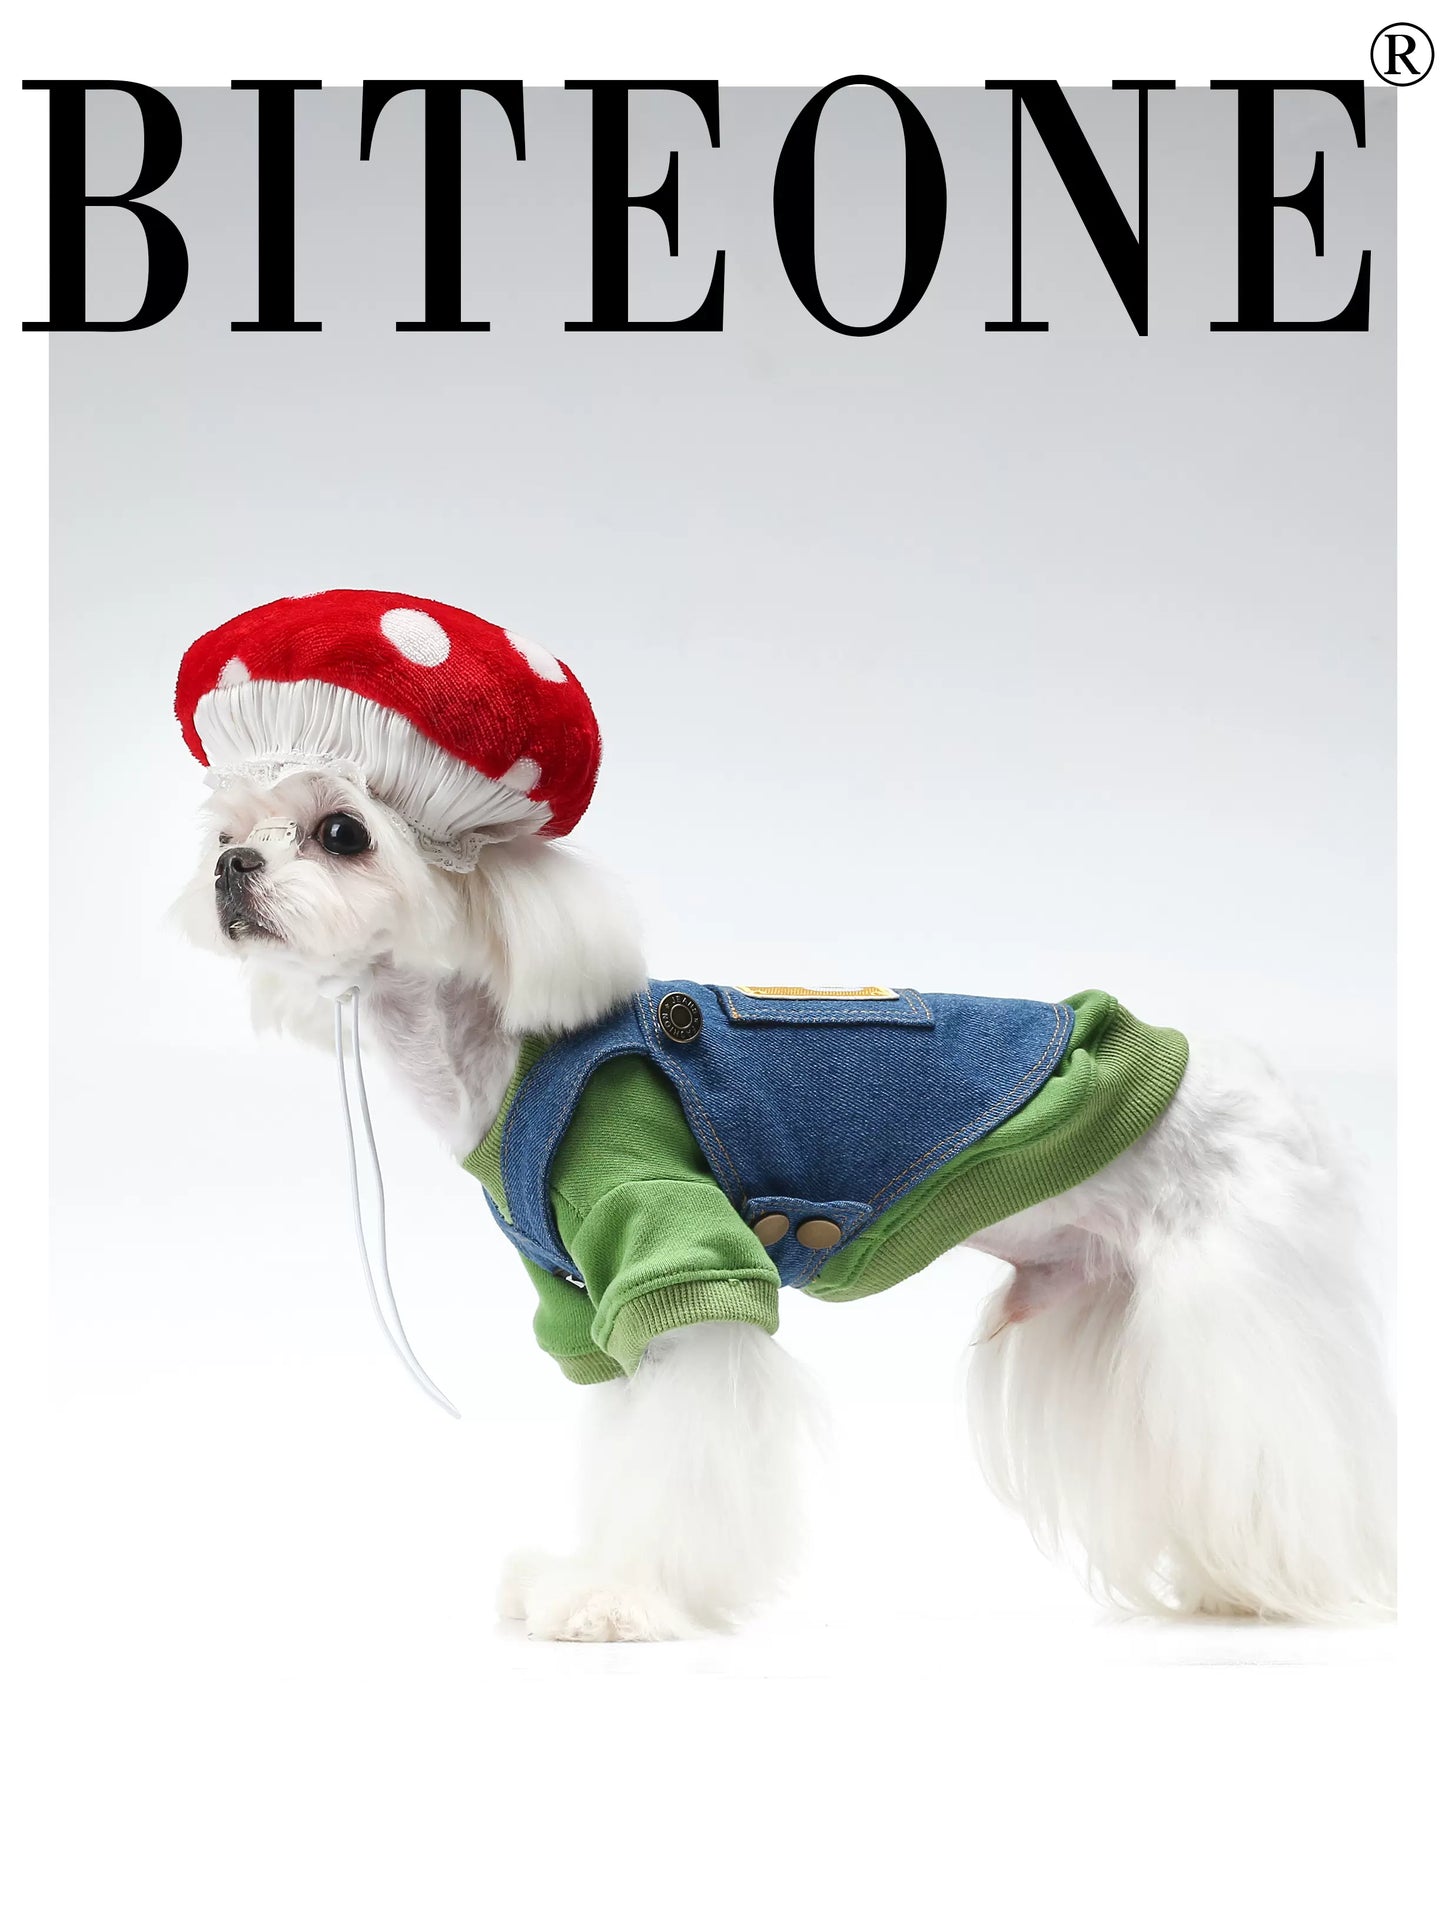 BITEONE: Gaming Fun - Sudadera con capucha de algodón de 320 g, peto vaquero y sombrero tipo hongo para mascotas